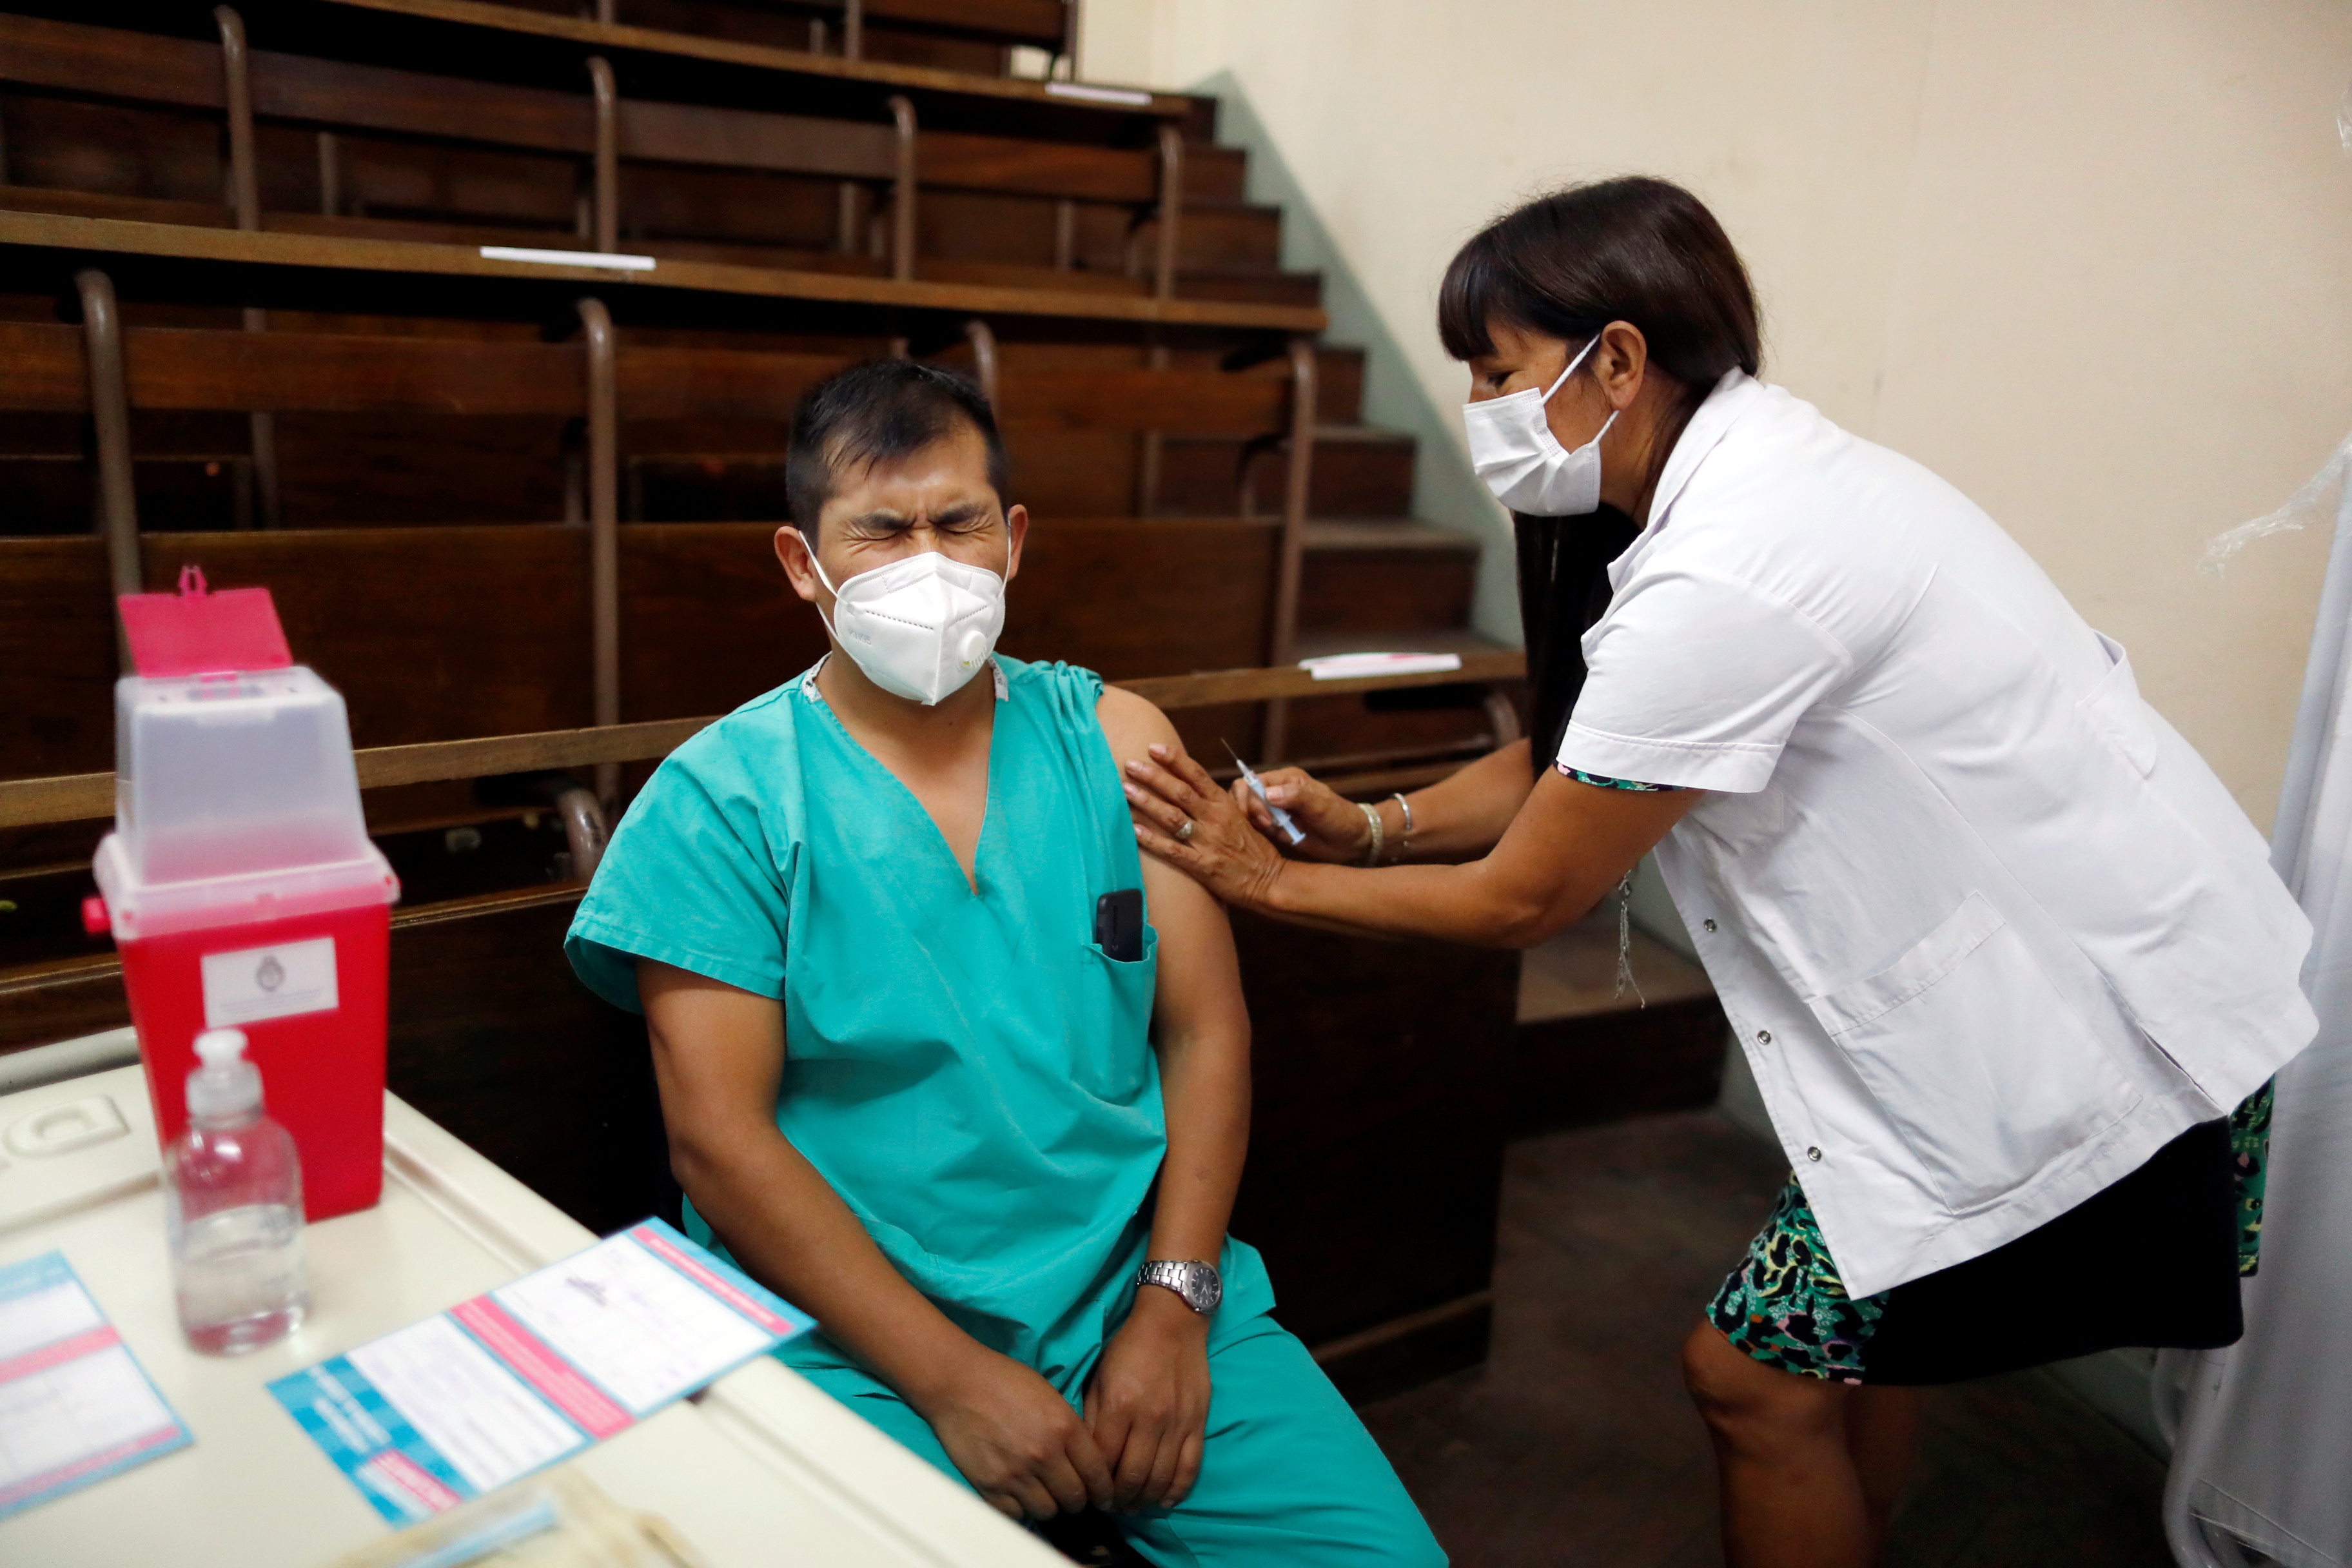 En diciembre, se había estimado en base al Registro Federal de Personal Sanitario que se iban a vacunar inicialmente 763.000 trabajadores de la salud en Argentina
REUTERS/Agustin Marcarian